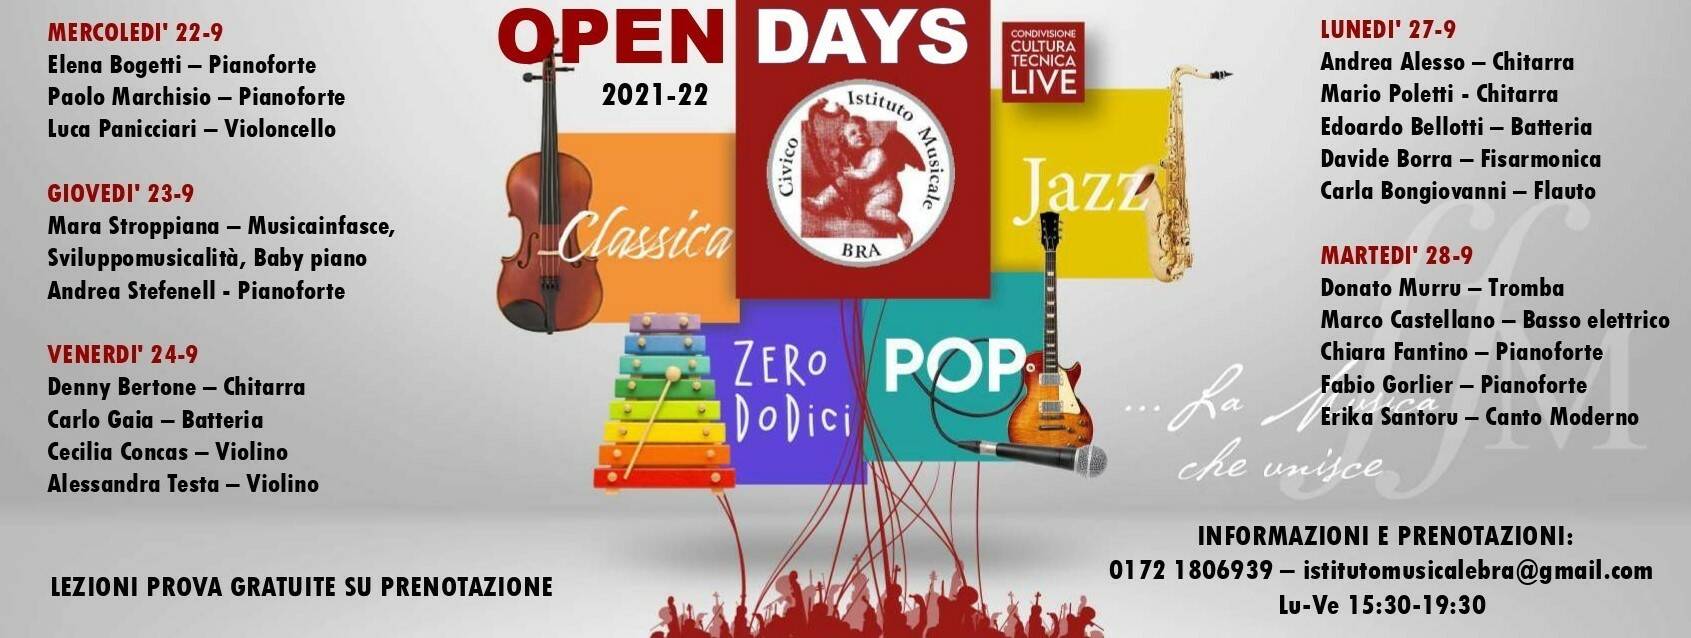 Bra, Open days al Civico Istituto Musicale “Gandino”